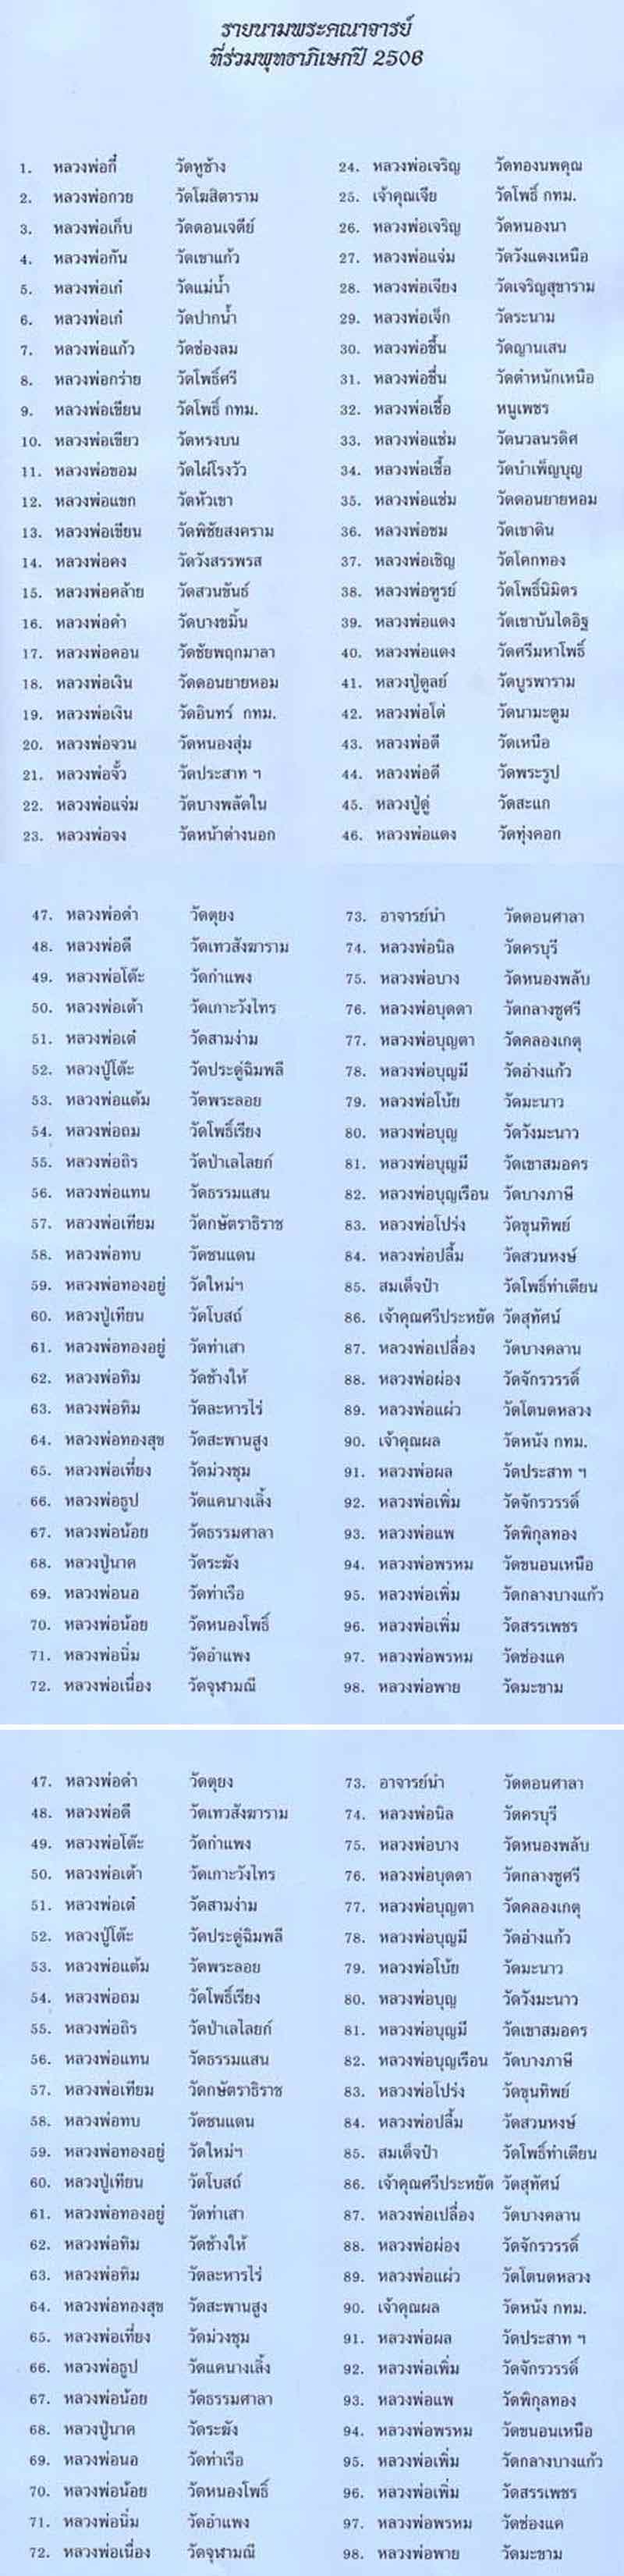 พระพุทธชินราช วัดประสาทบุญญาวาส ปี 2506 องค์ที่ 1 - 5